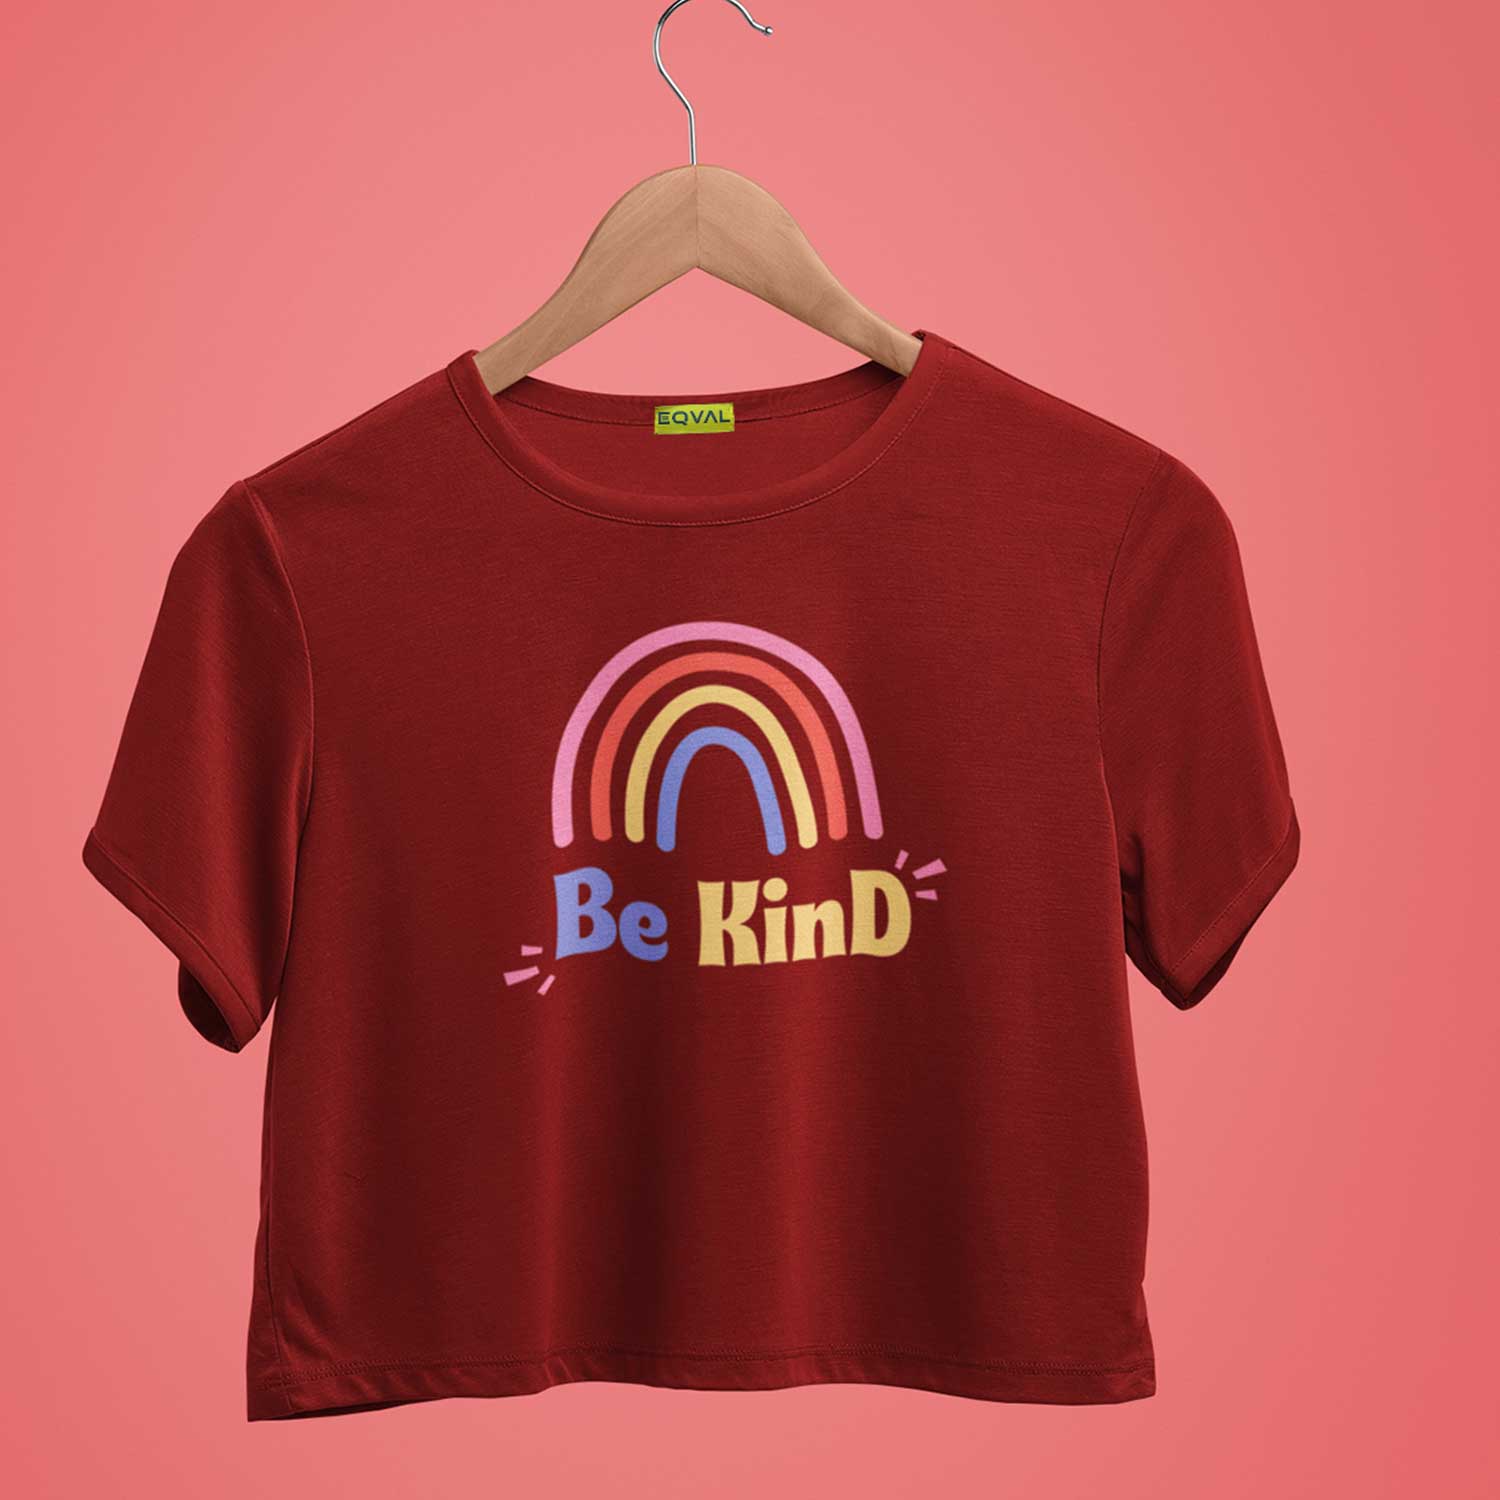 Be Kind Printed Maroon Crop Top